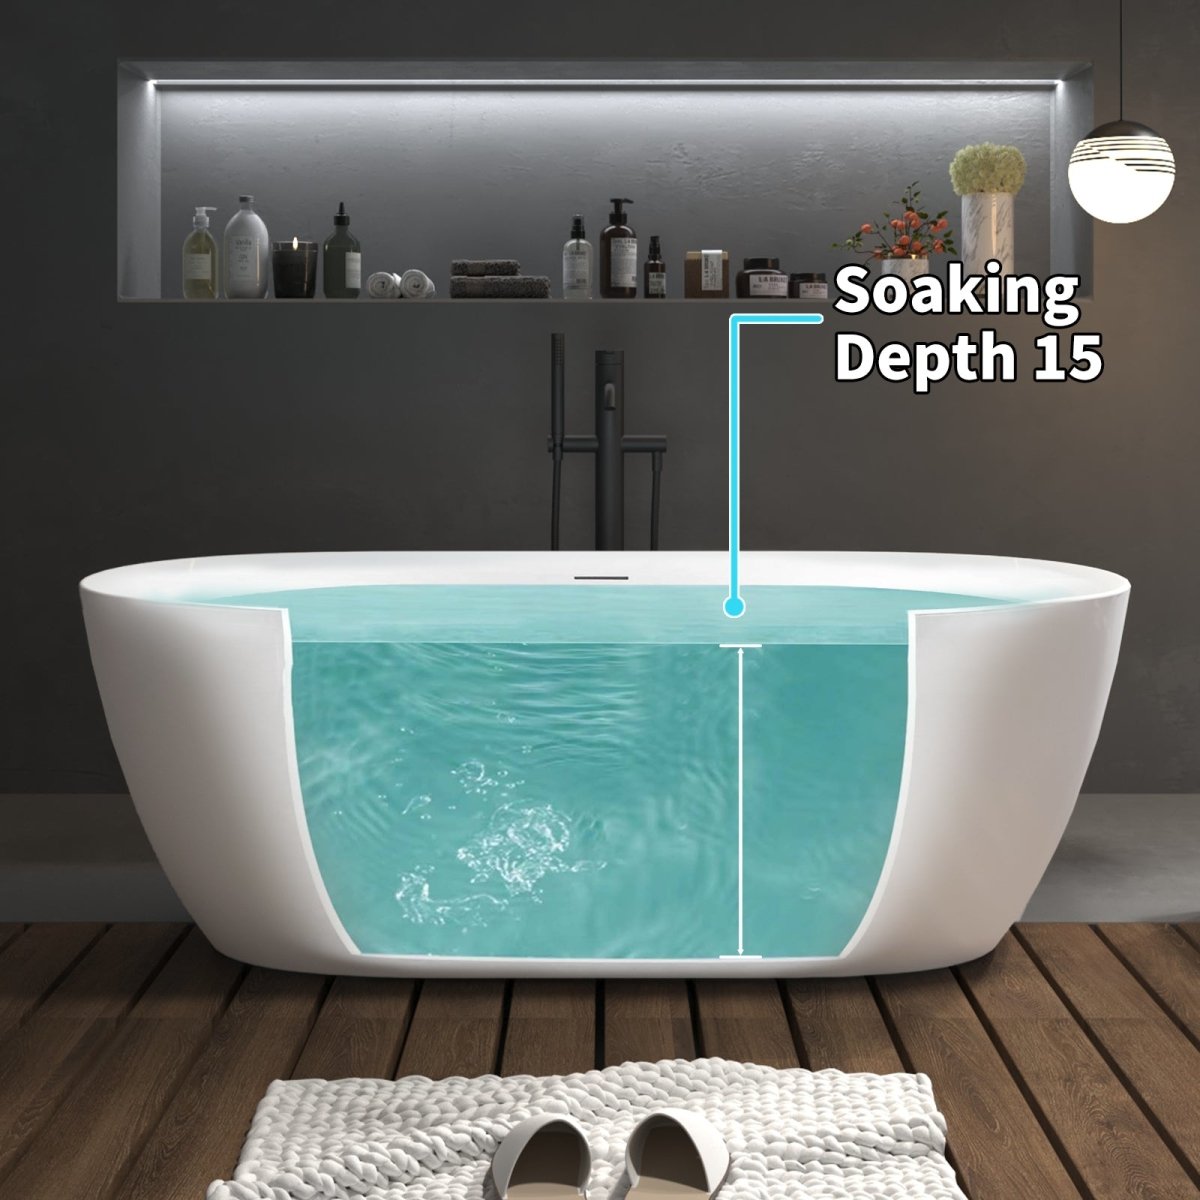 ExBrite 67" Bathtub Acrylic Free Standing Tub Classic Oval Shape Soaking Tub Gloss White